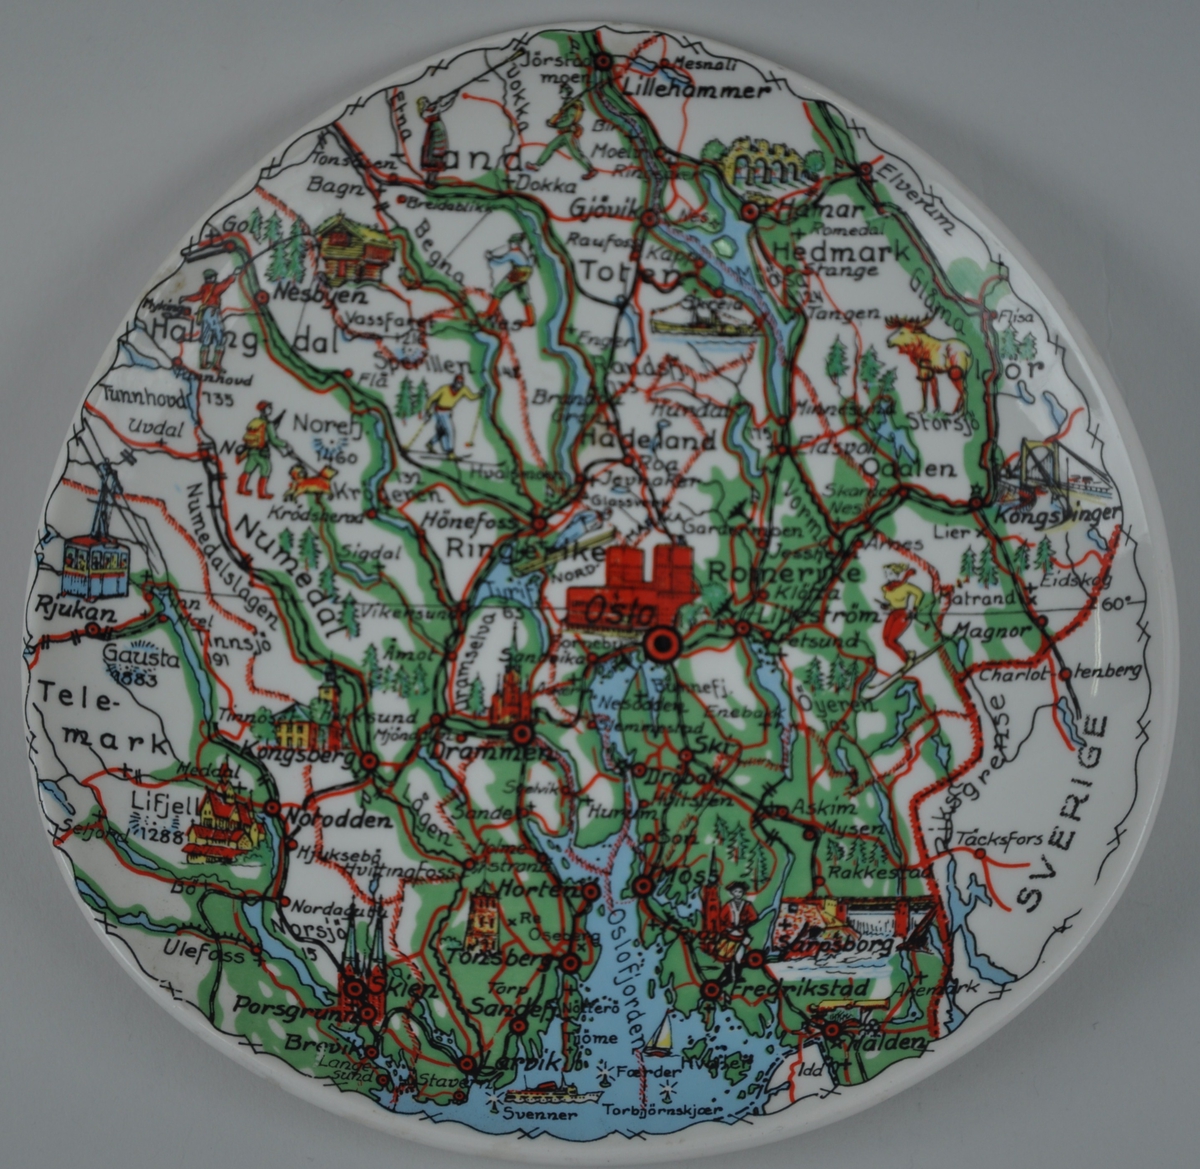 Motivet er eit kartutsnitt som viser Oslo i midten og områda rundt frå Larvik og Halden i sør til Lillehammer i nord, frå Rjukan i vest til Kongsvinger i aust.